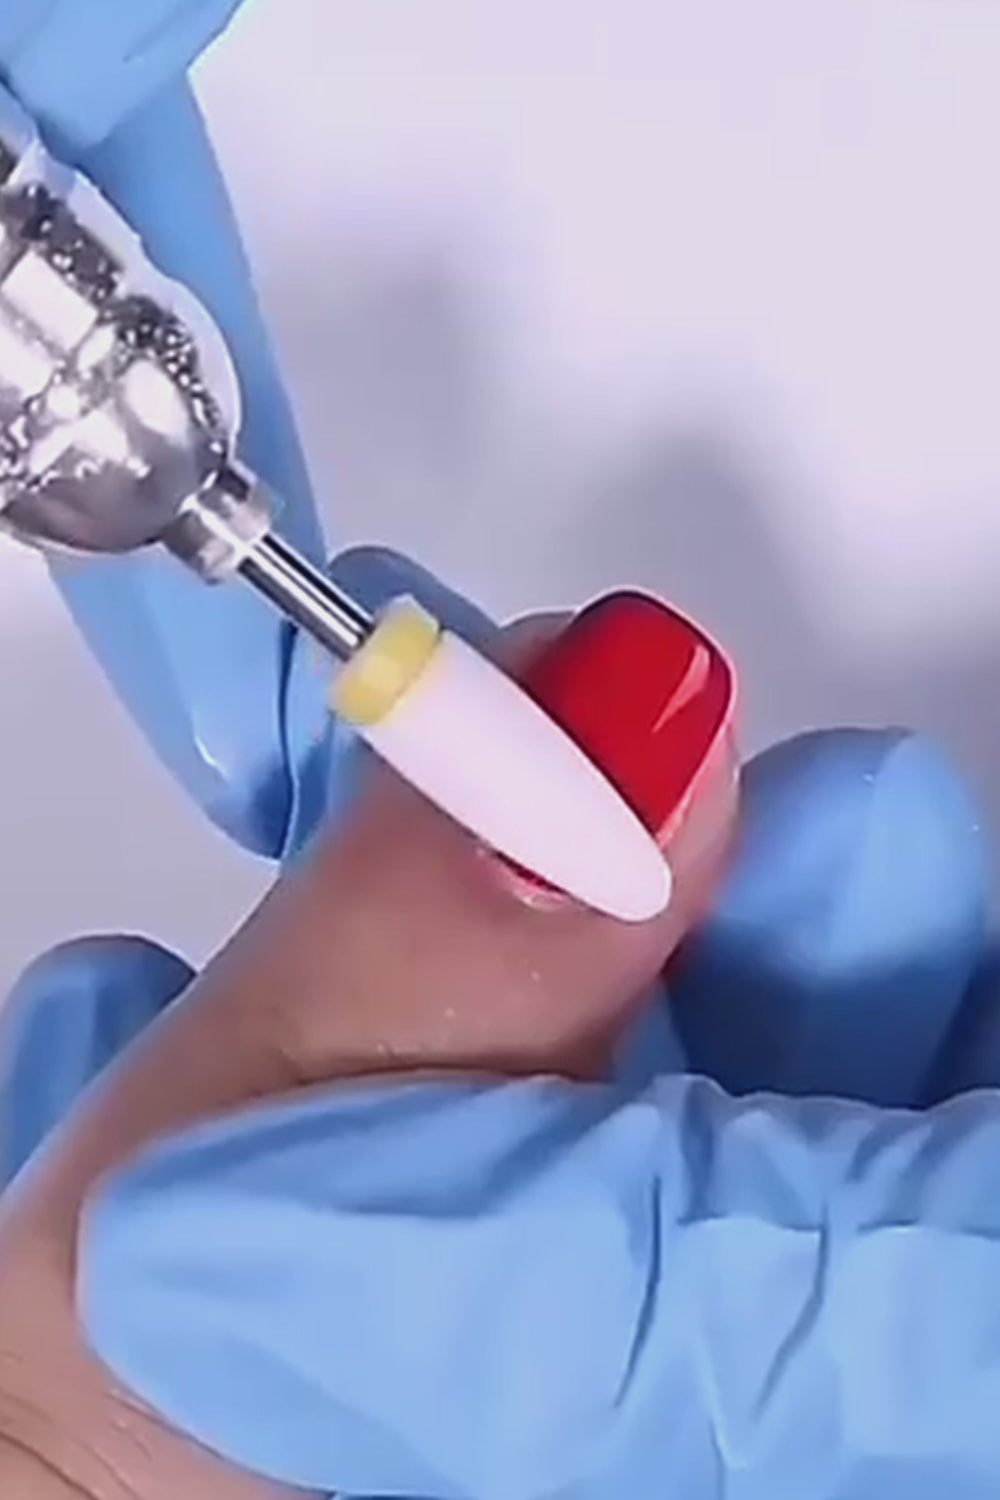 vidéo d'utilisation d'un embout céramique ponceuse ongle sur un ongle vernis rouge